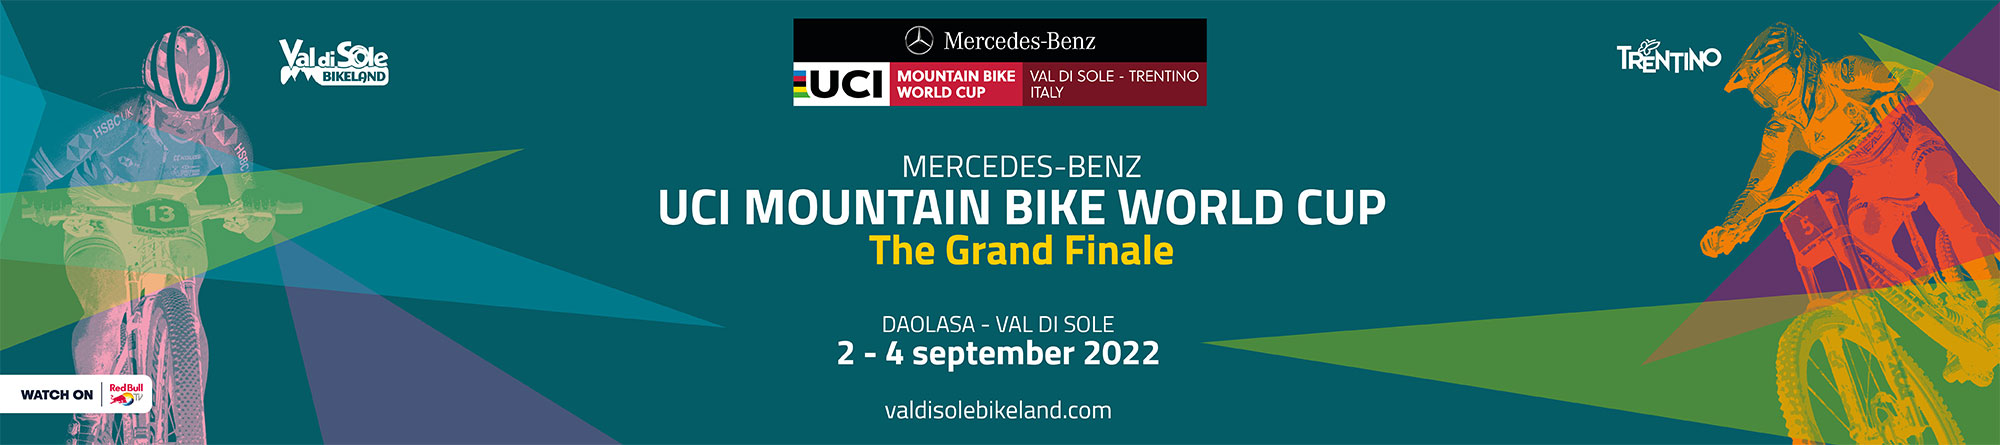 Ordini di partenza e classifiche - UCI Mountain Bike World Cup Finals 2022